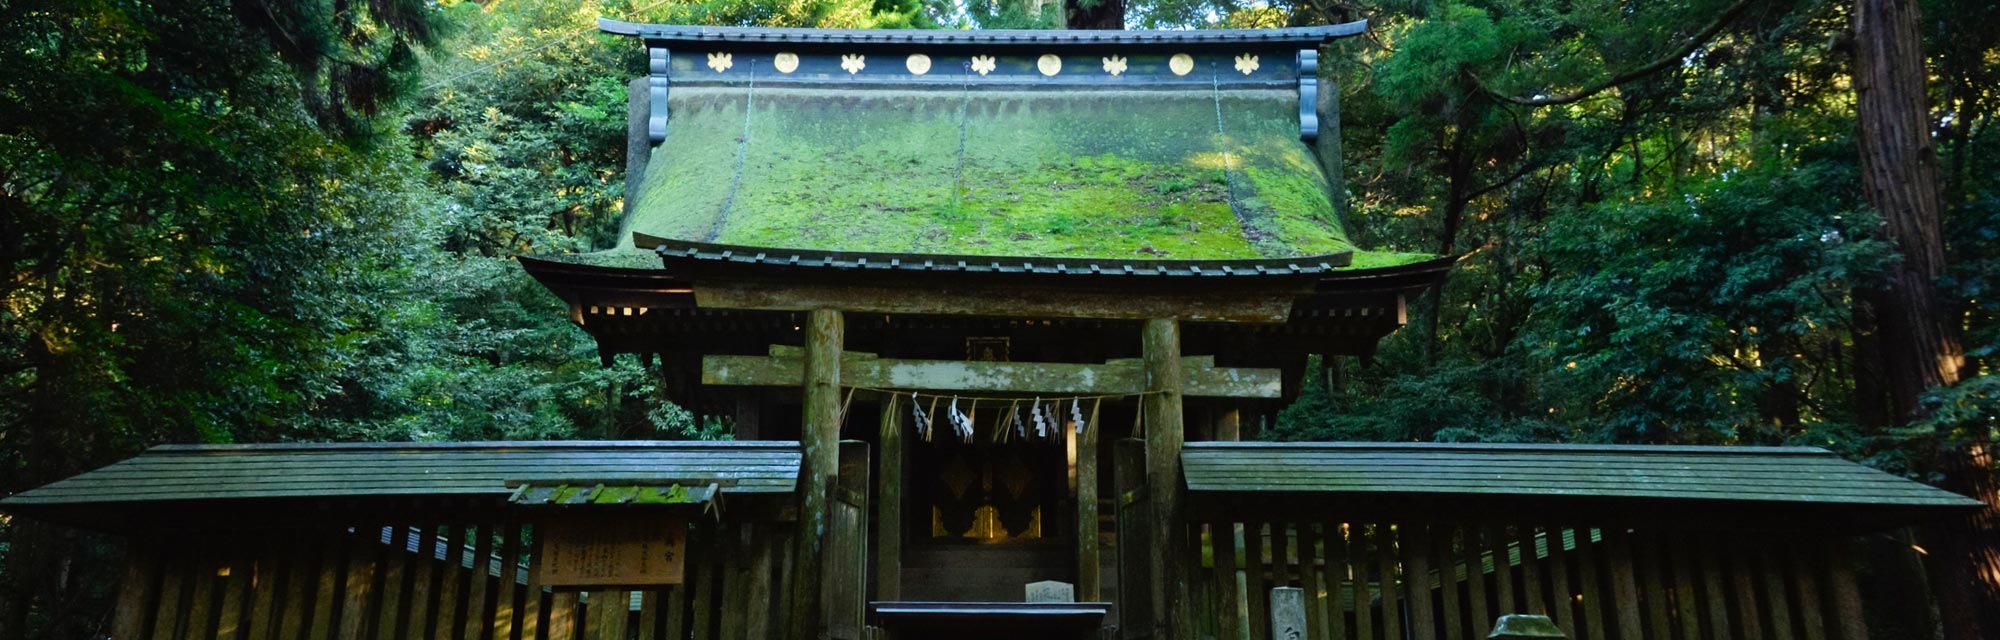 Kashima-jingu-Shrine.jpg